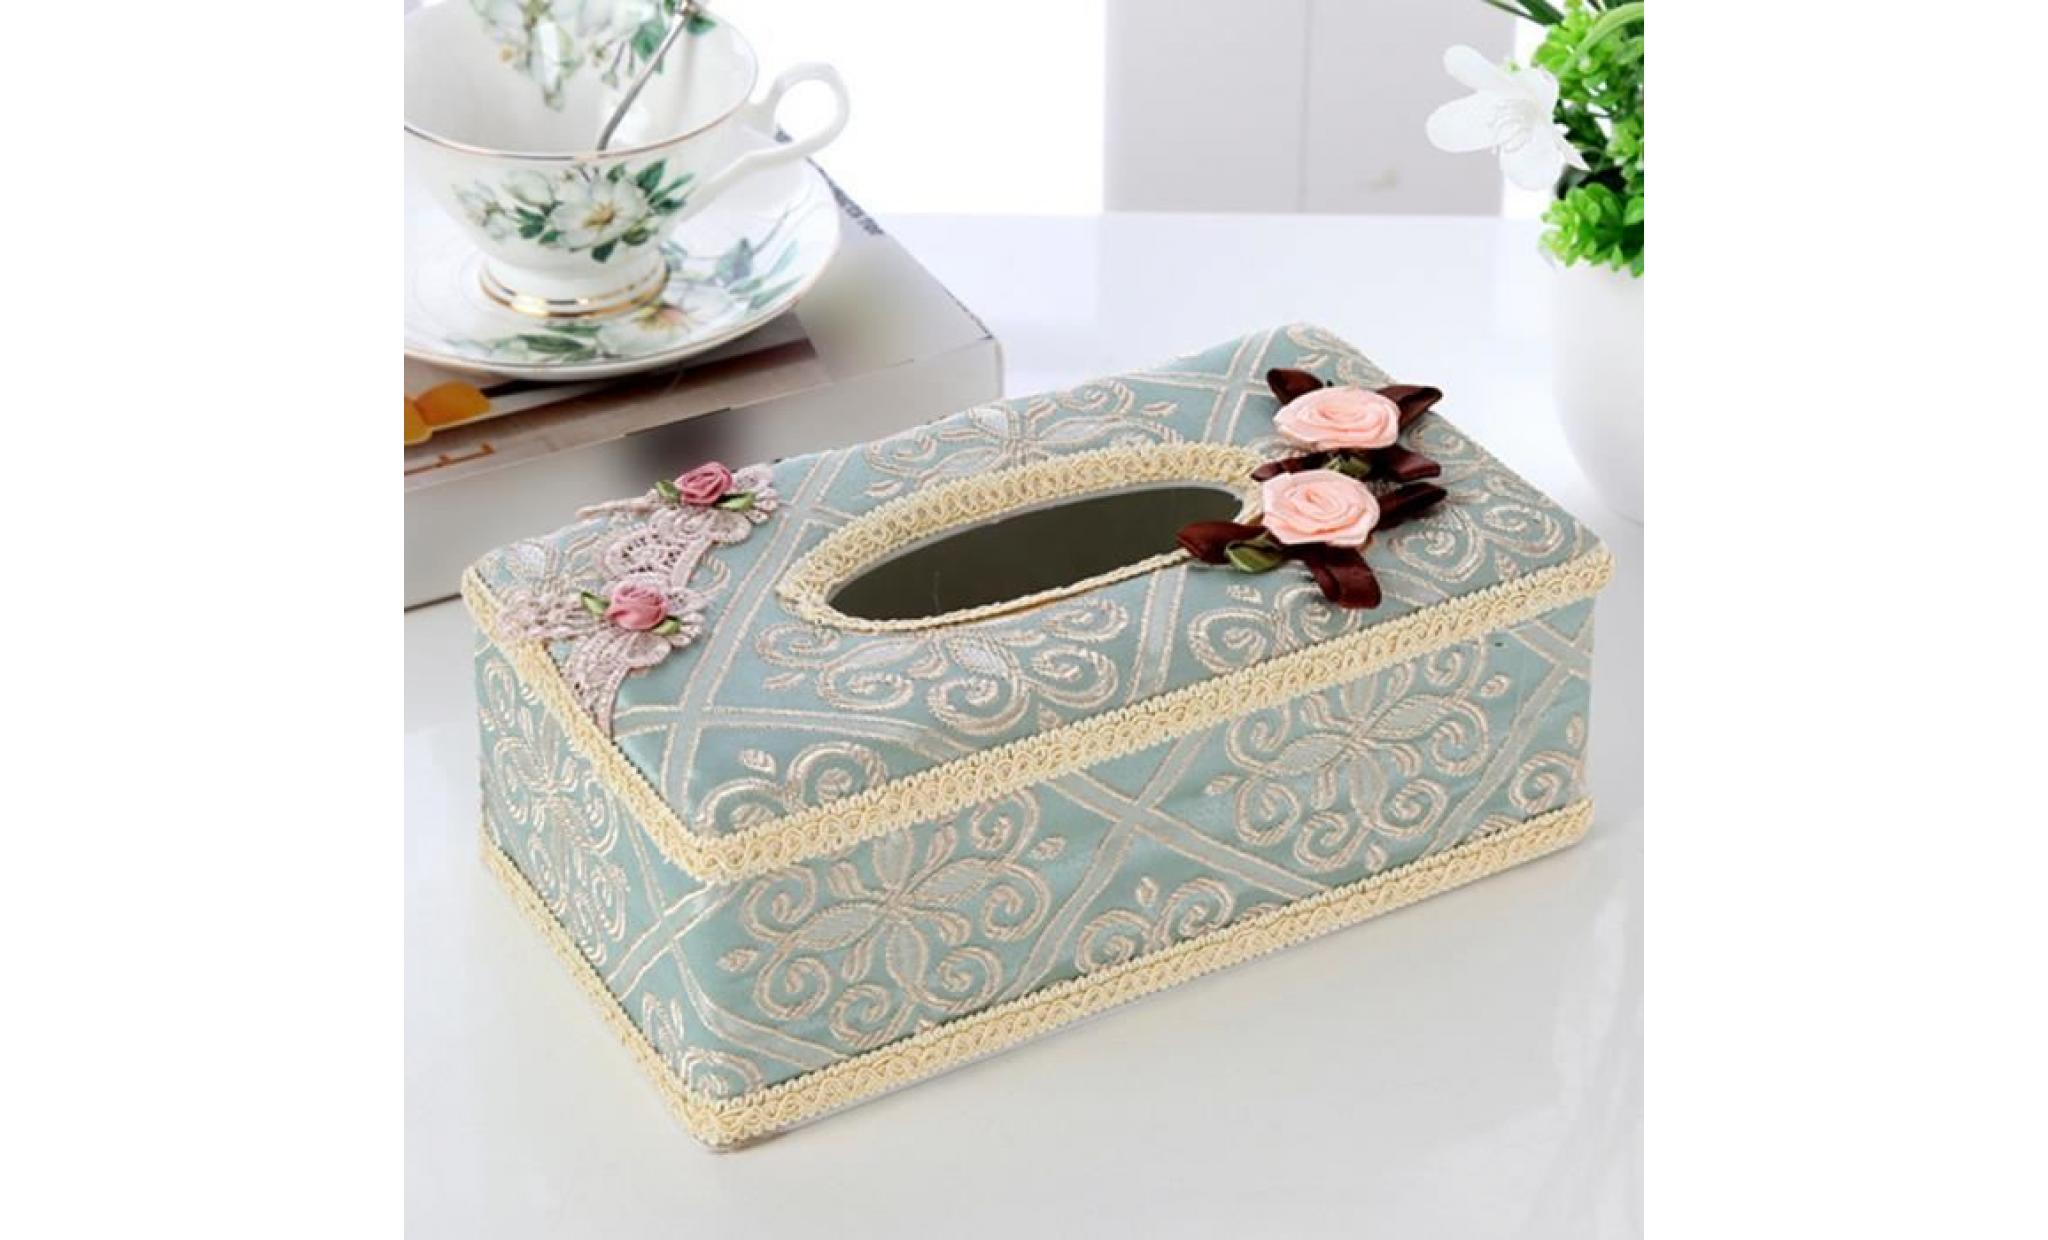 creative tissé boîte de tissu couverture décorative accueil pompage papier boîtes table basse porte papier (bleu) pas cher